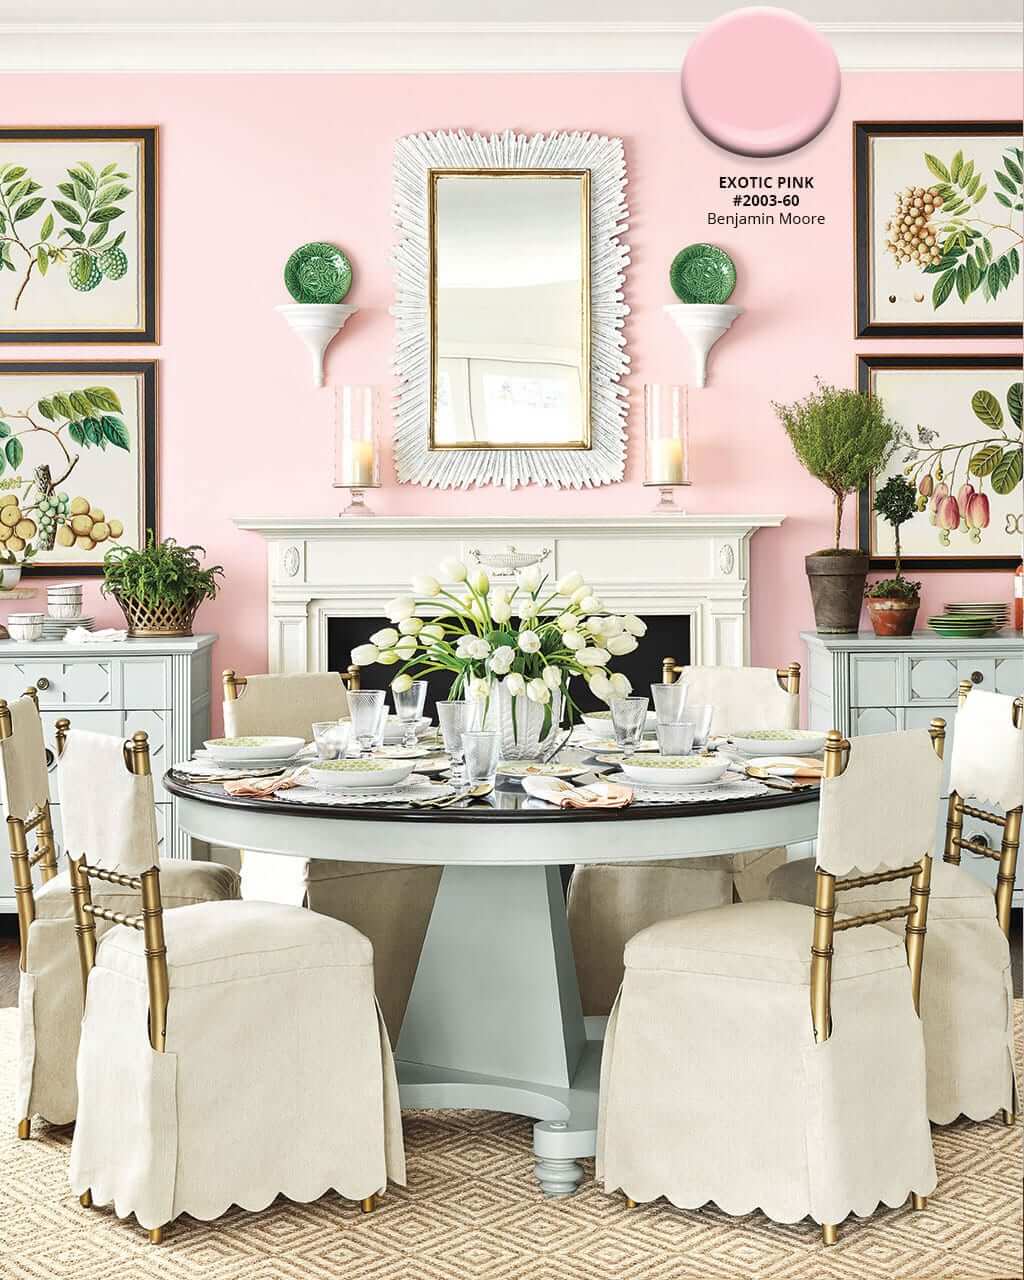 Ballard Designs Spring: Exotic Pink